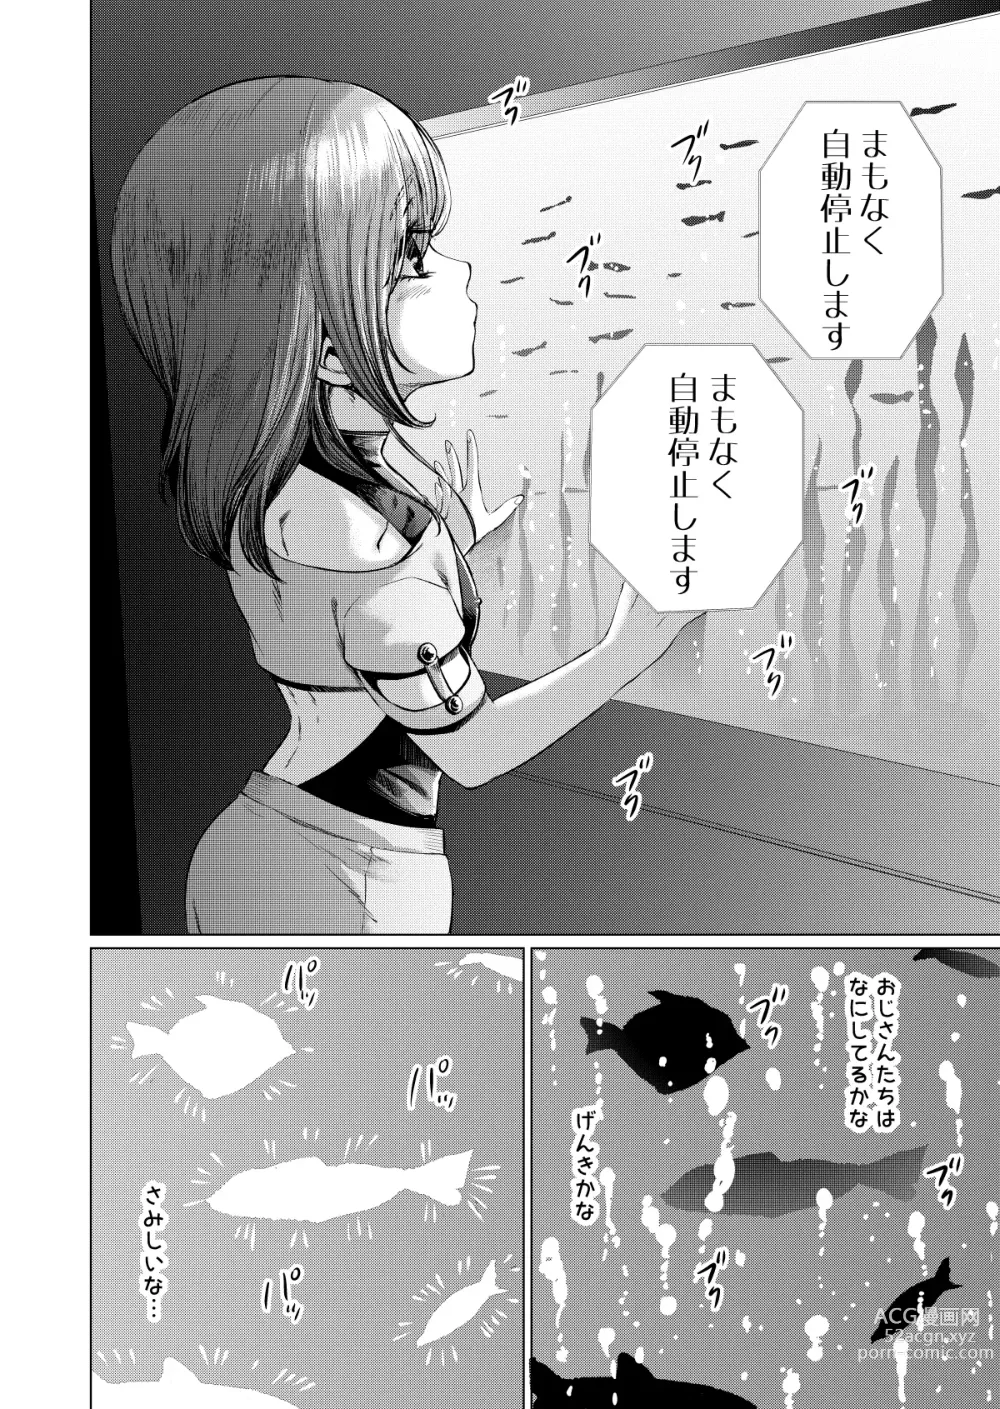 Page 3 of doujinshi Musume Modoki - Daughter similar to daughter 3